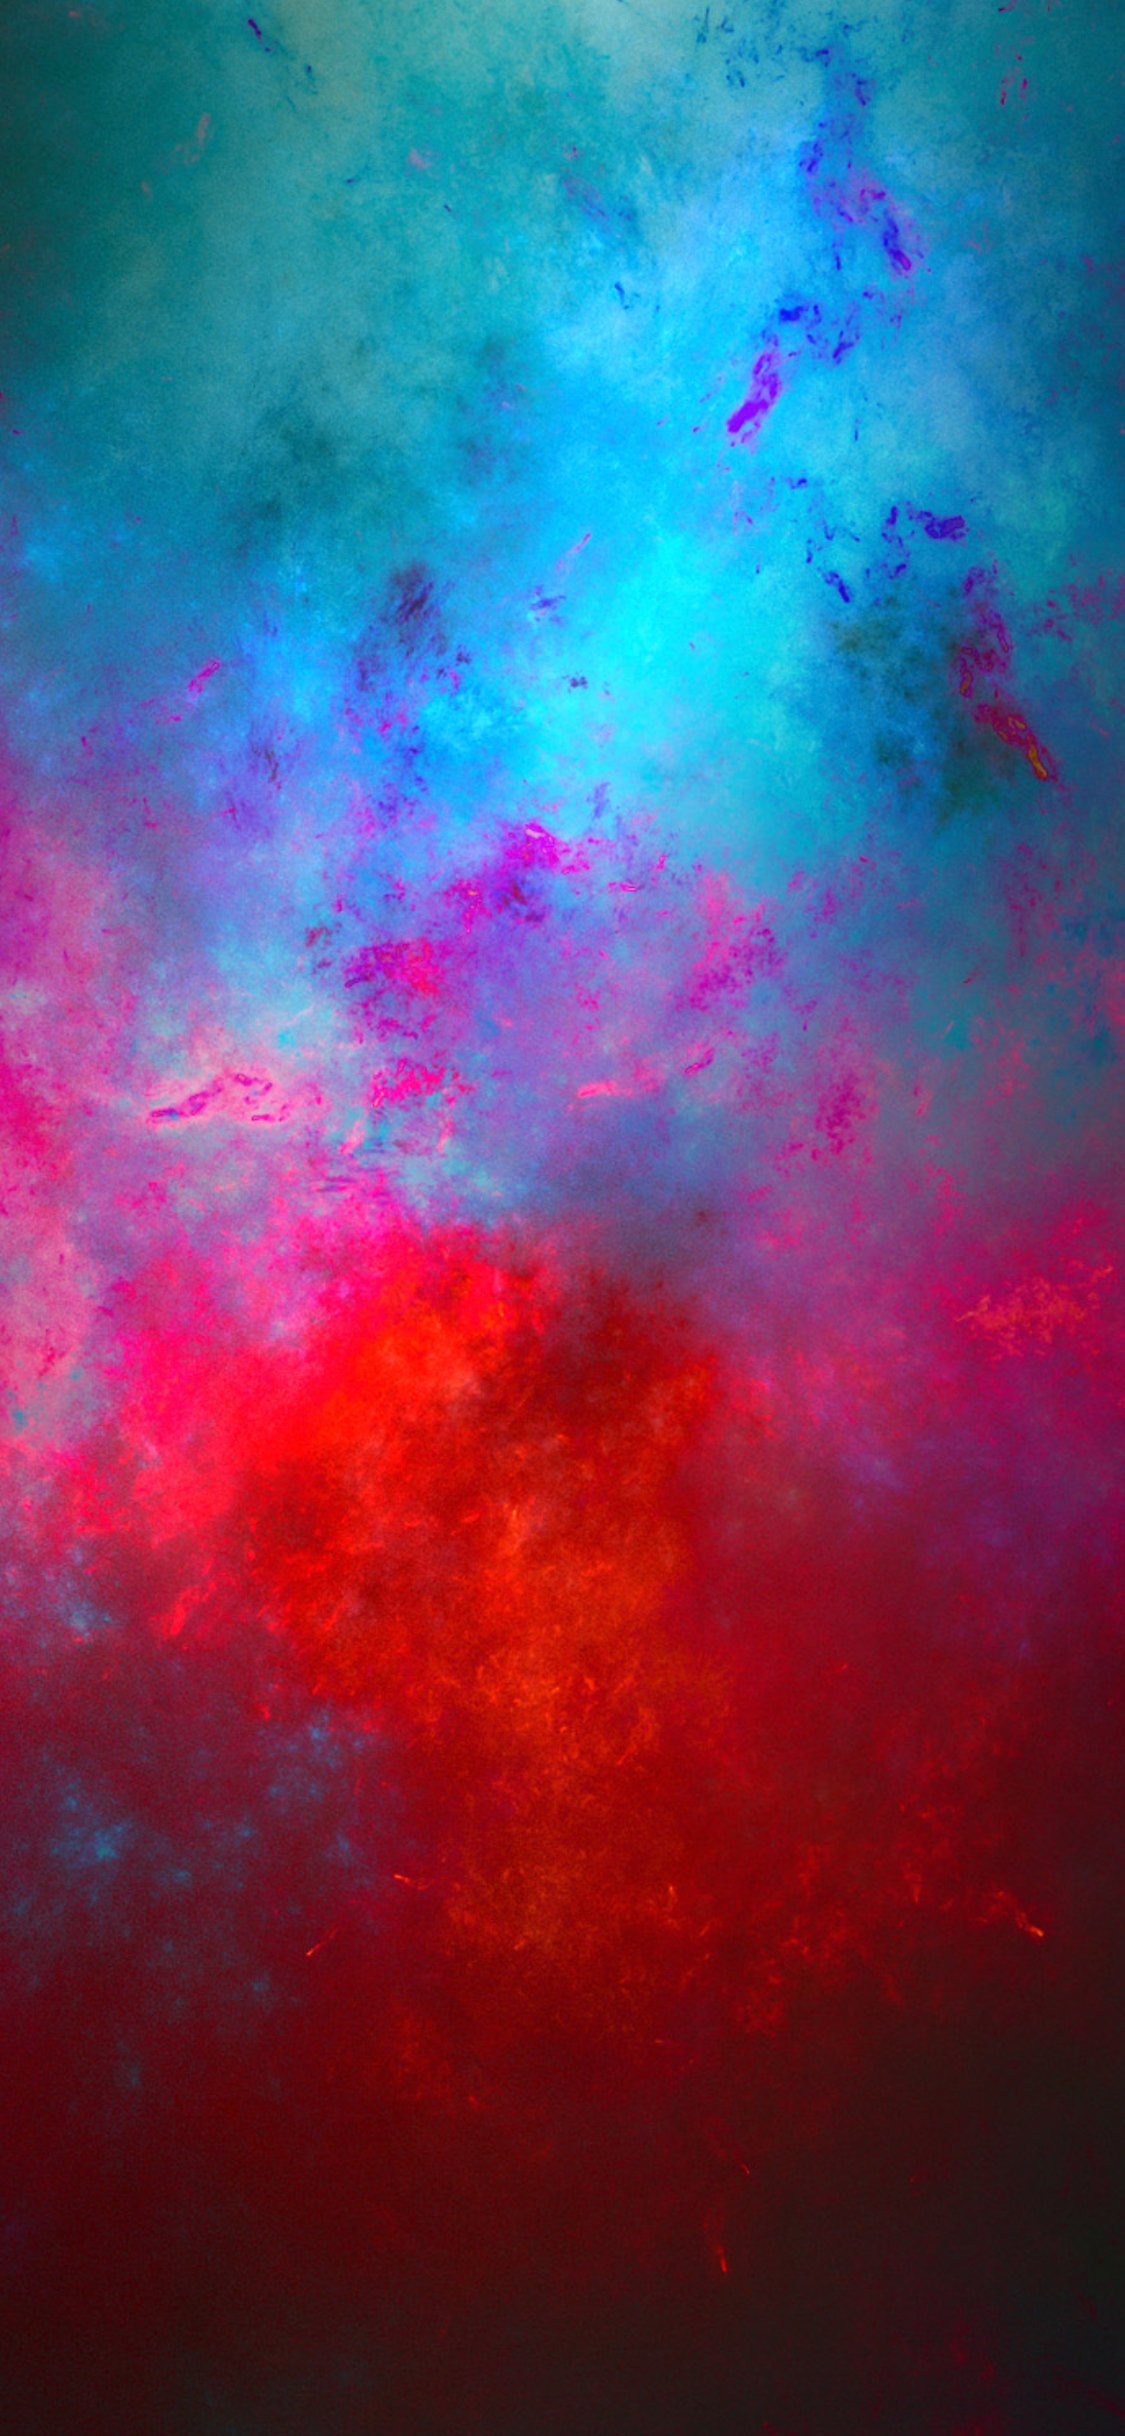 48+] iPhone X Multicolor Wallpapers - WallpaperSafari